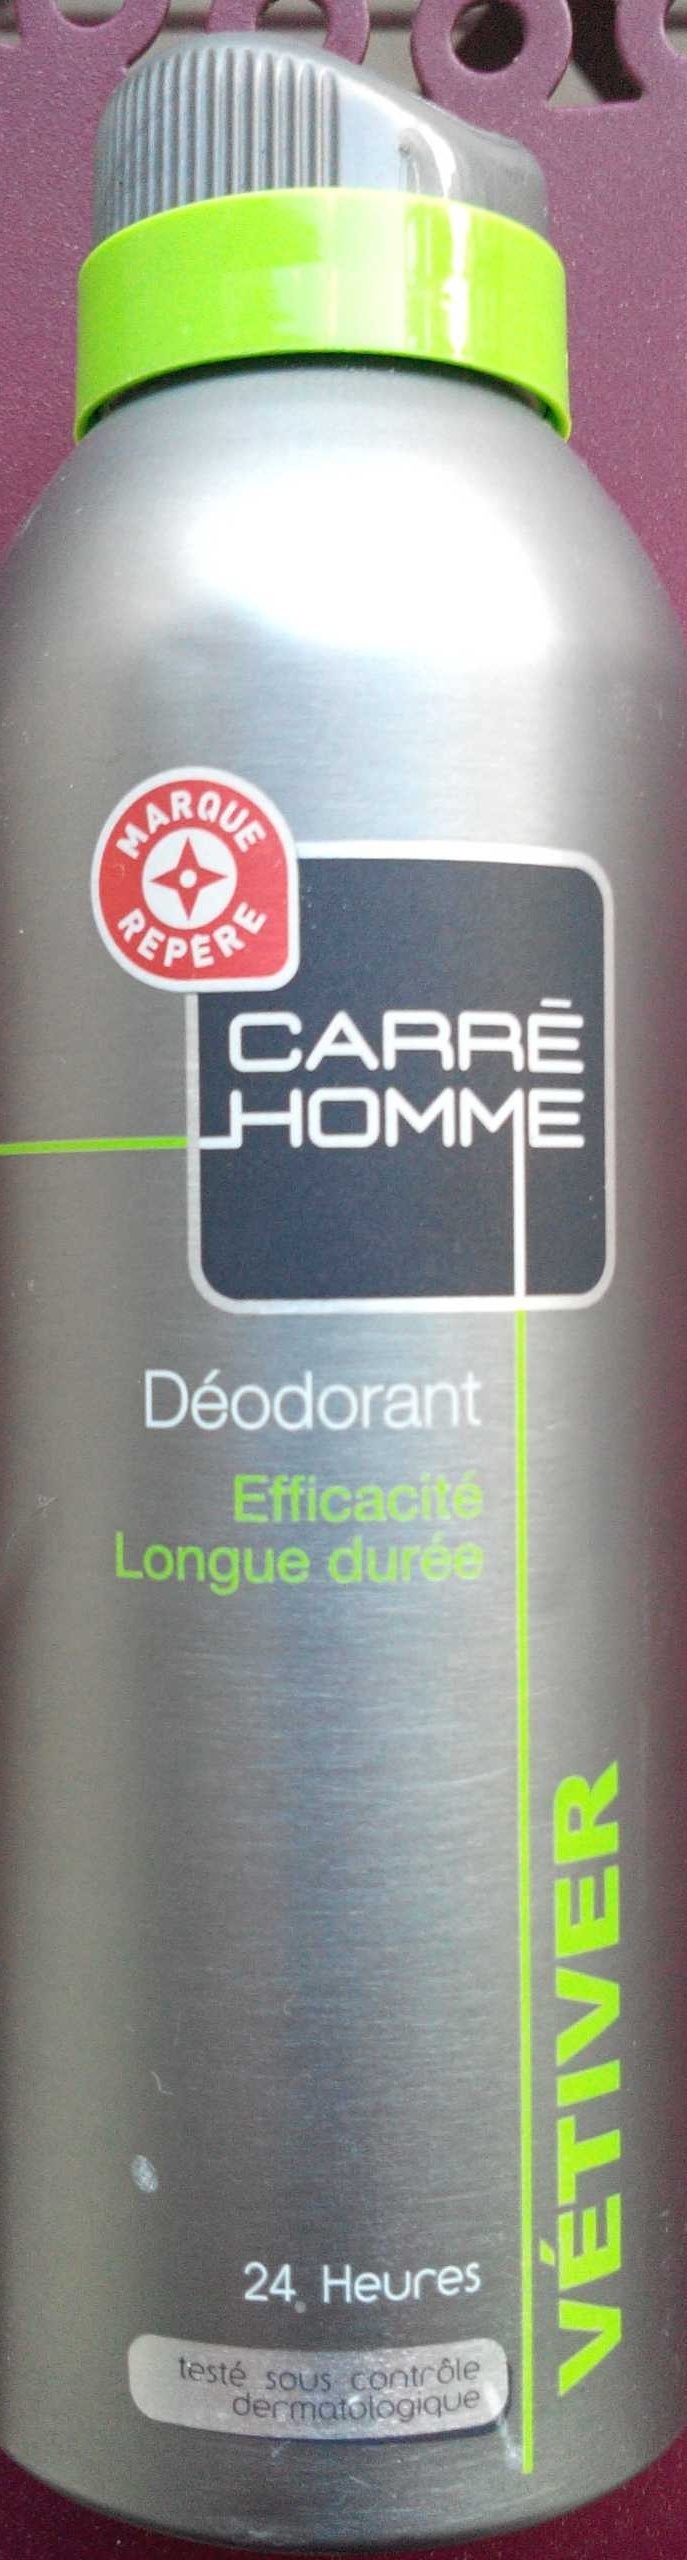 Déodorant Vétiver - Product - fr